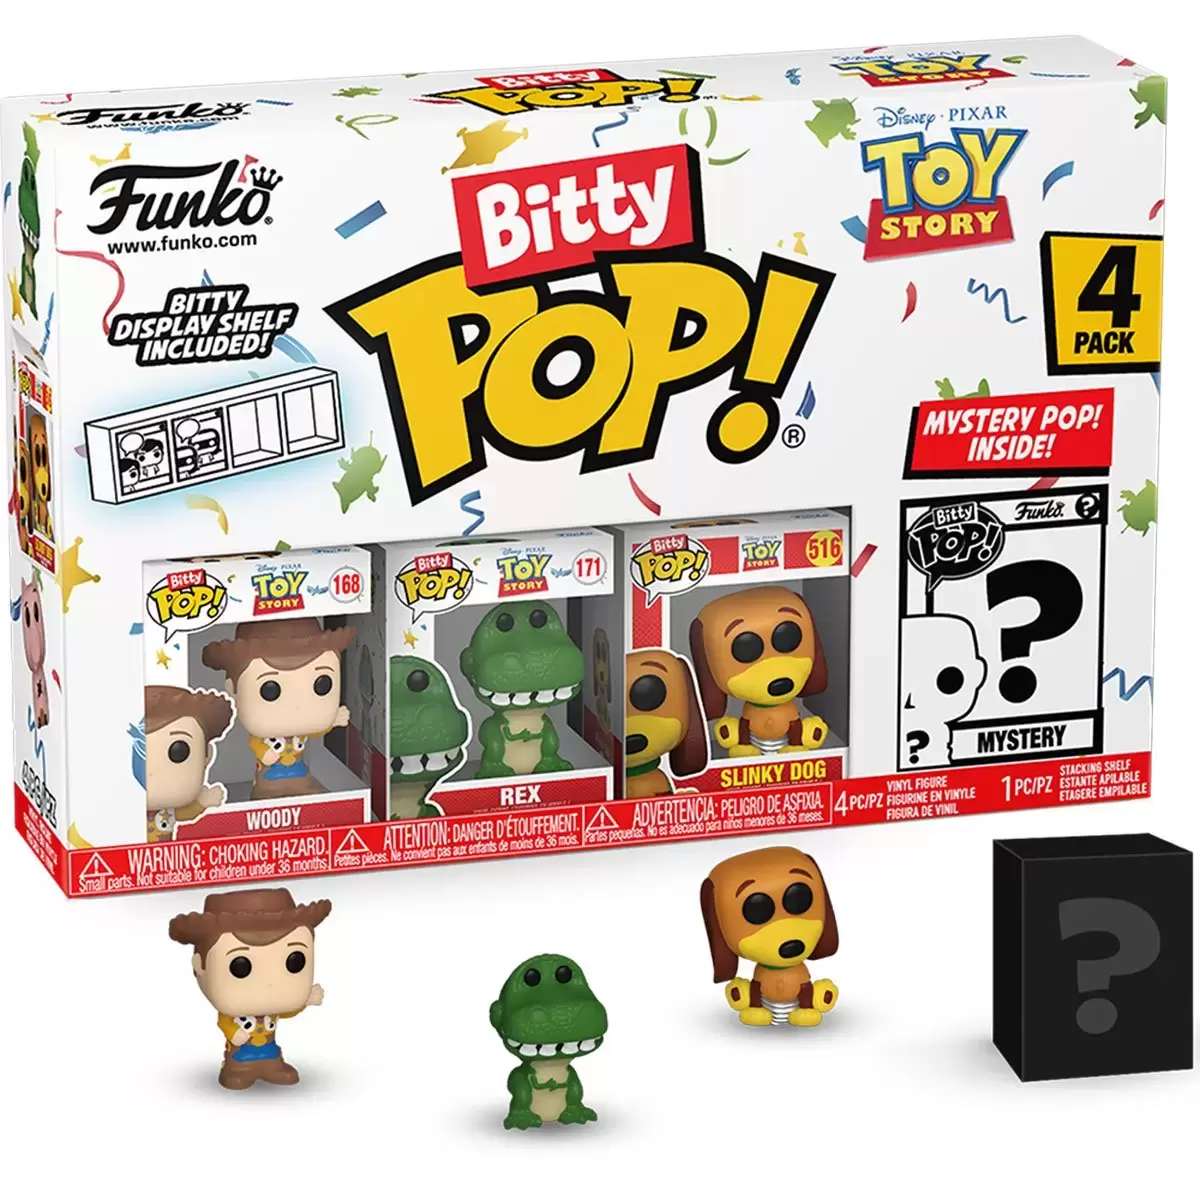 Bitty POP! - Toy Story - Woody, Rex, Slinky Dog & Mystery